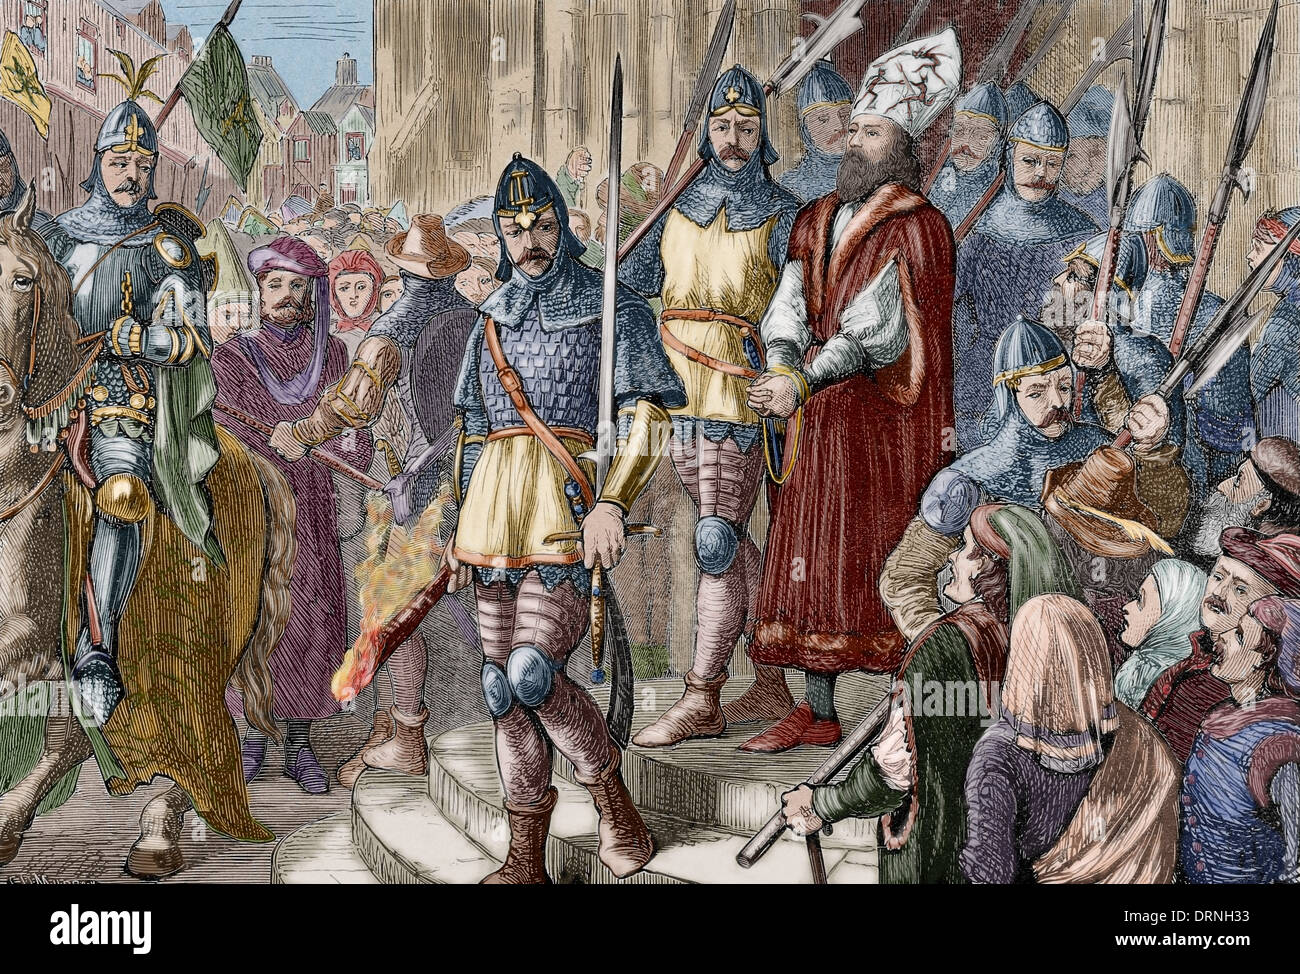 Hieronymus von Prag (1360-1416). Böhmische Prediger. Hieronymus von Prag marschieren bis zur Ausführung. Gravur. Farbige. Stockfoto